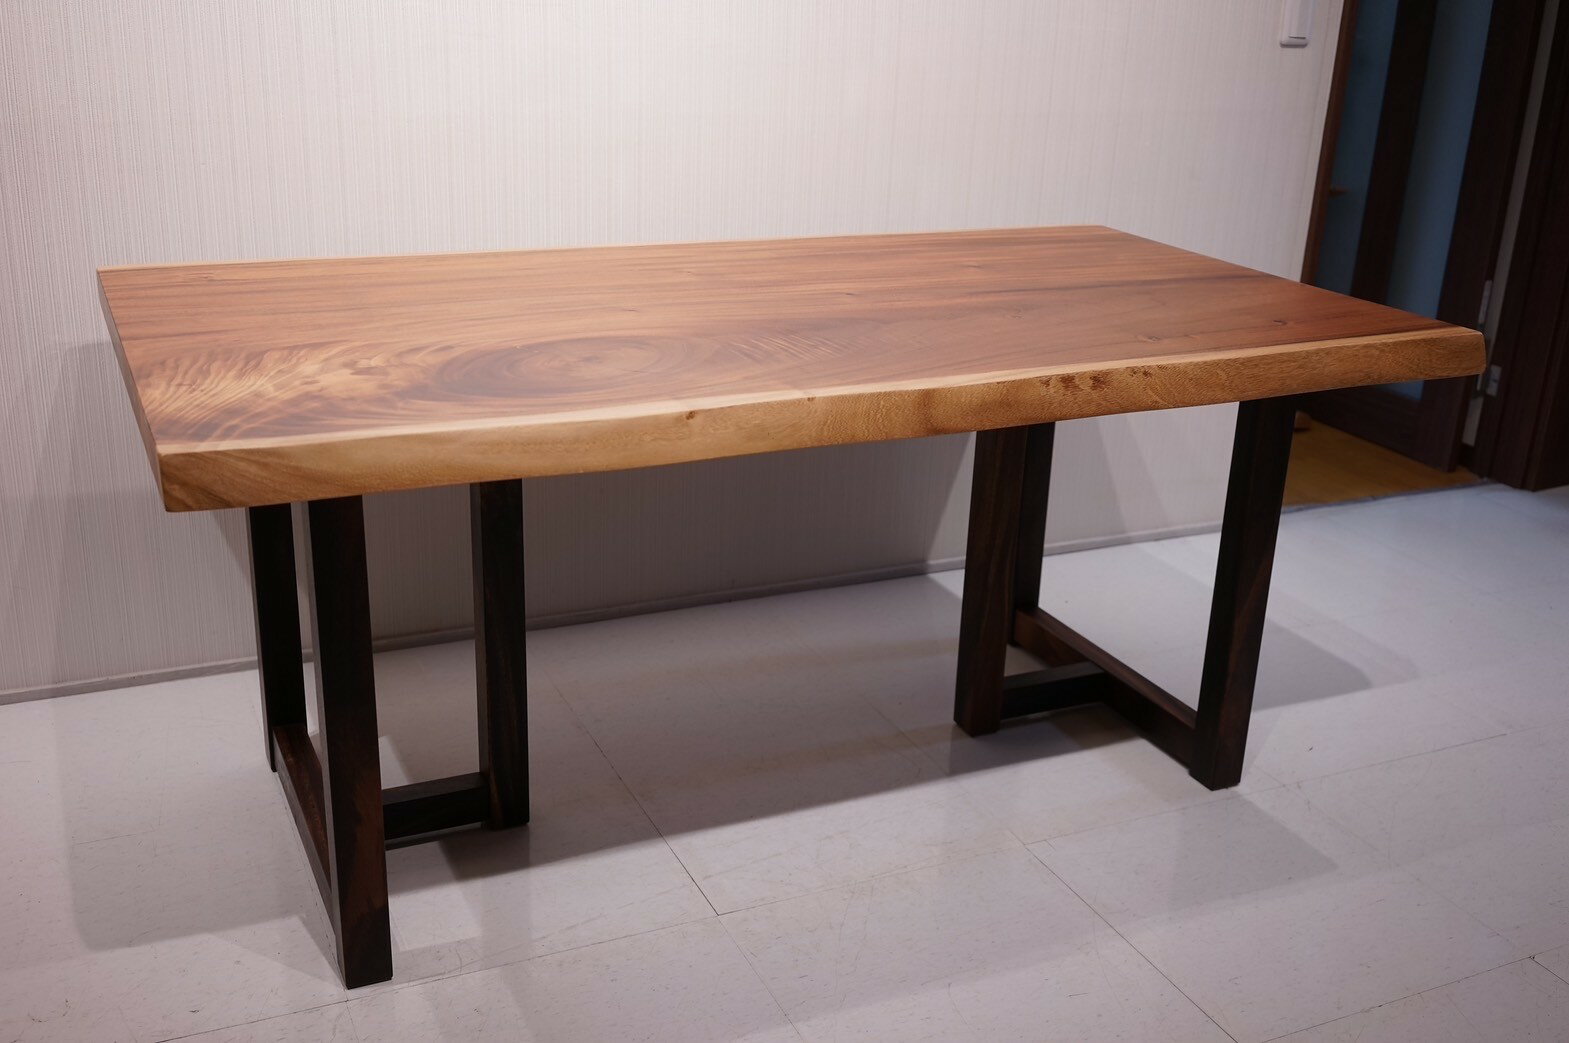 【中古】一枚板 無垢 ダイニングテーブル 座卓 天板 ウォールナット 脚 天然木 送料無料【値下げ交渉可能】